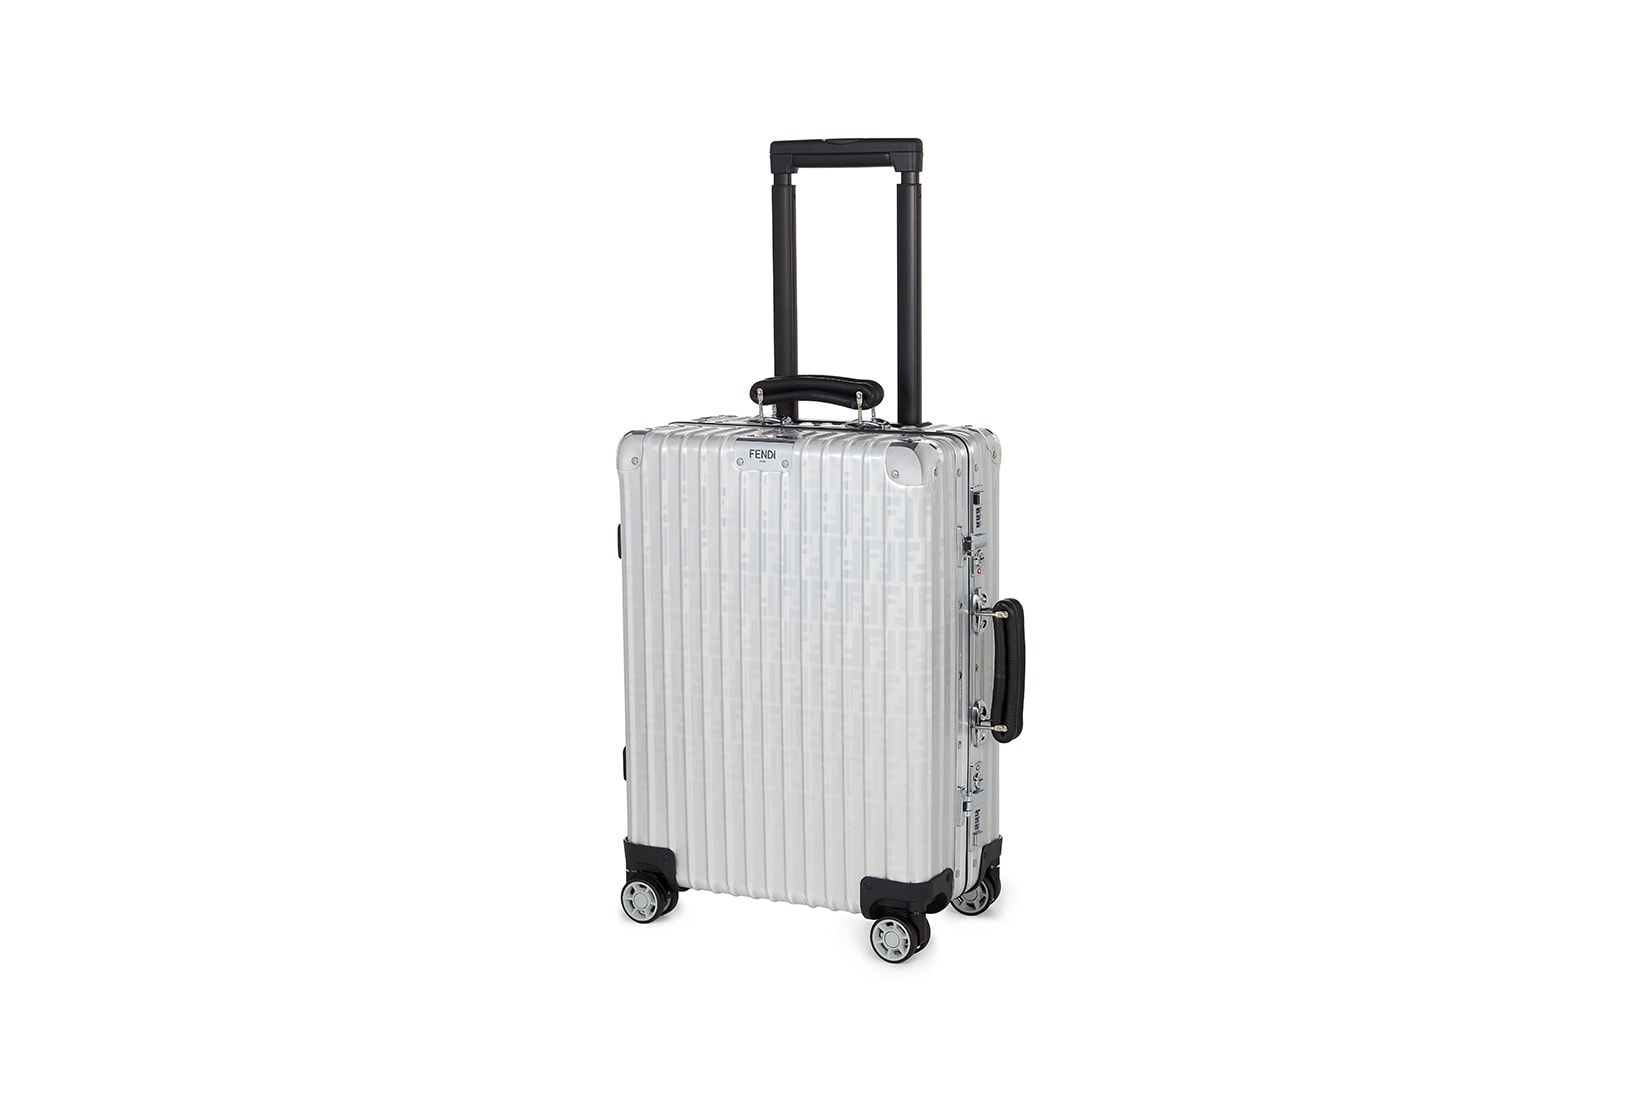 Fendi Rimowa Classic Cabin Suitcase Luggage Collaboration Silver